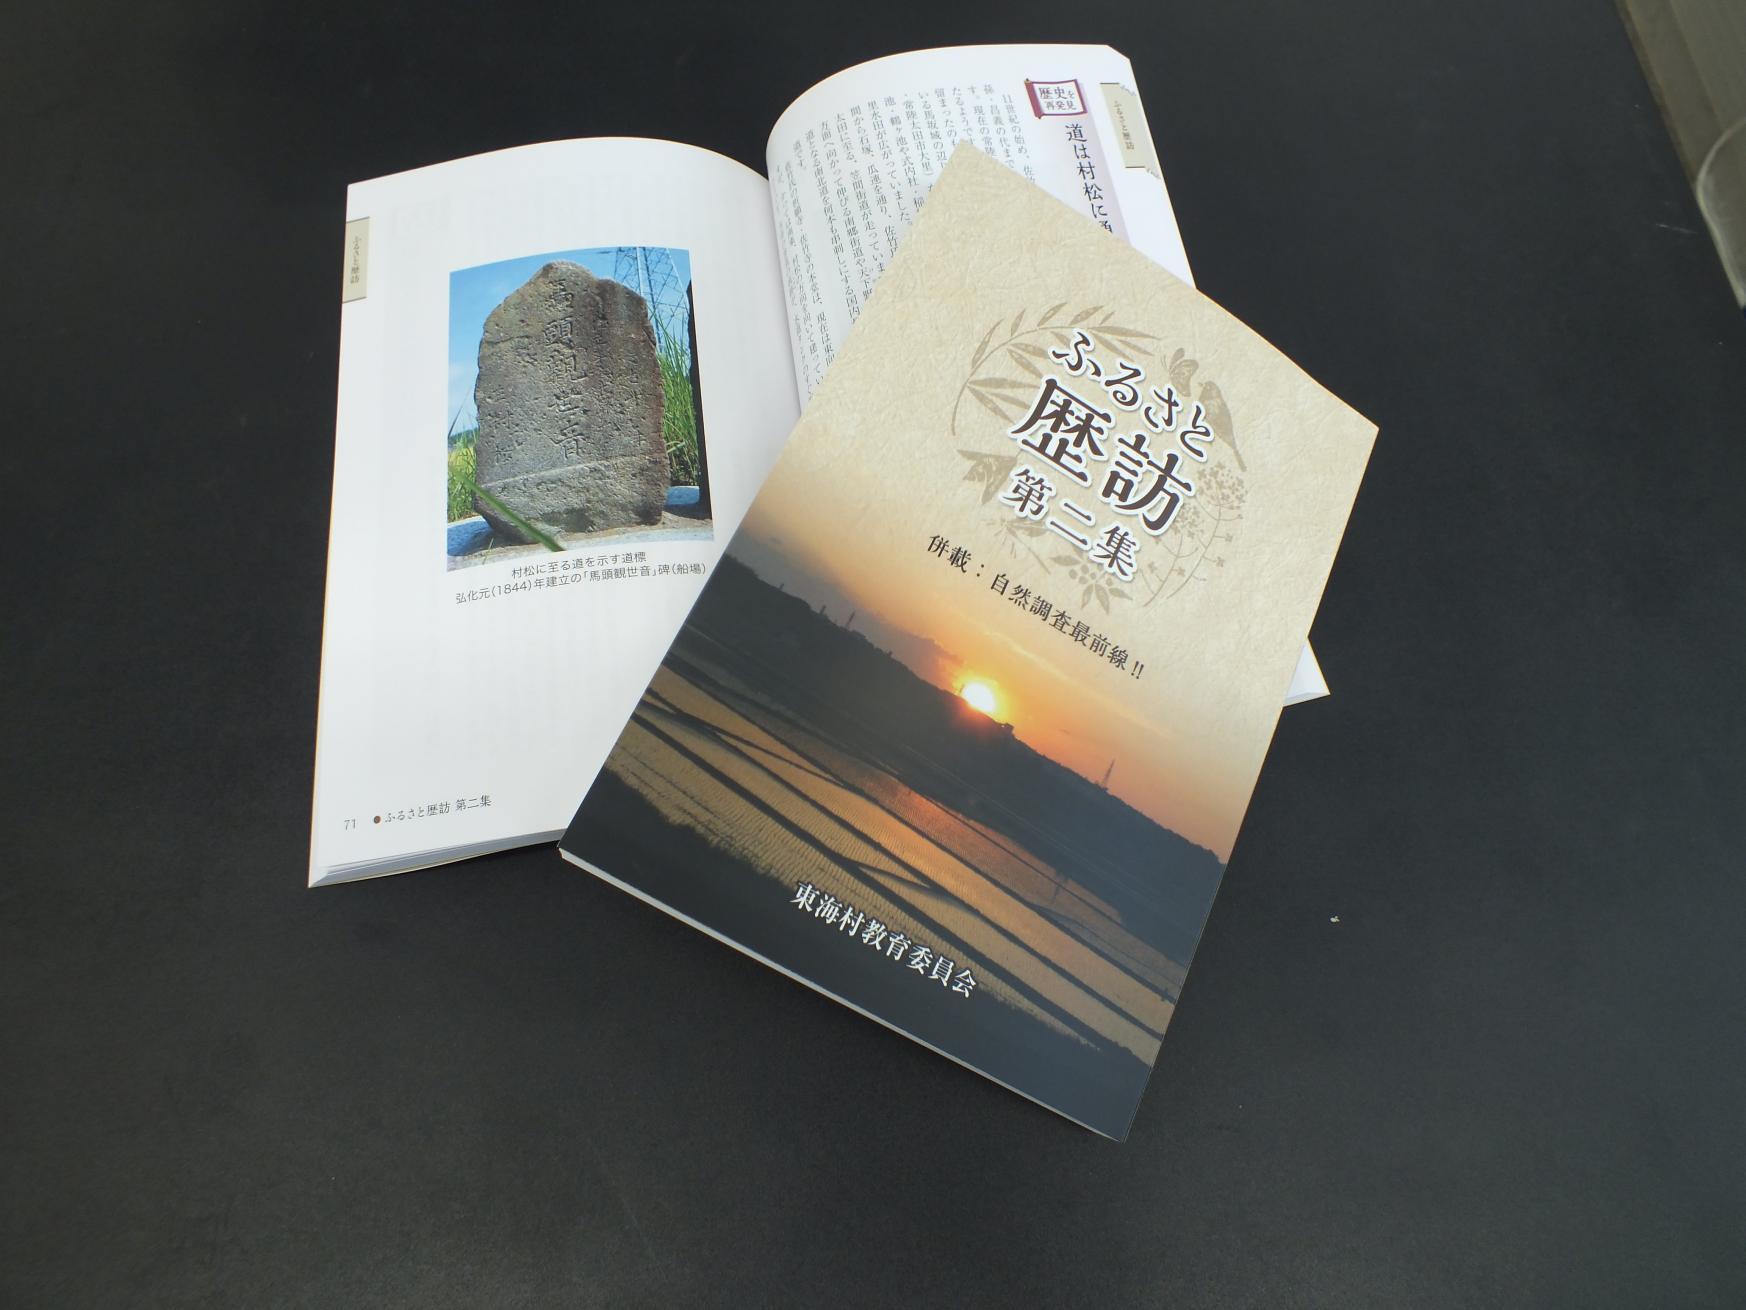 石碑のページを開いた本の上に重ねた、ふるさと歴訪第二集の表紙の写真